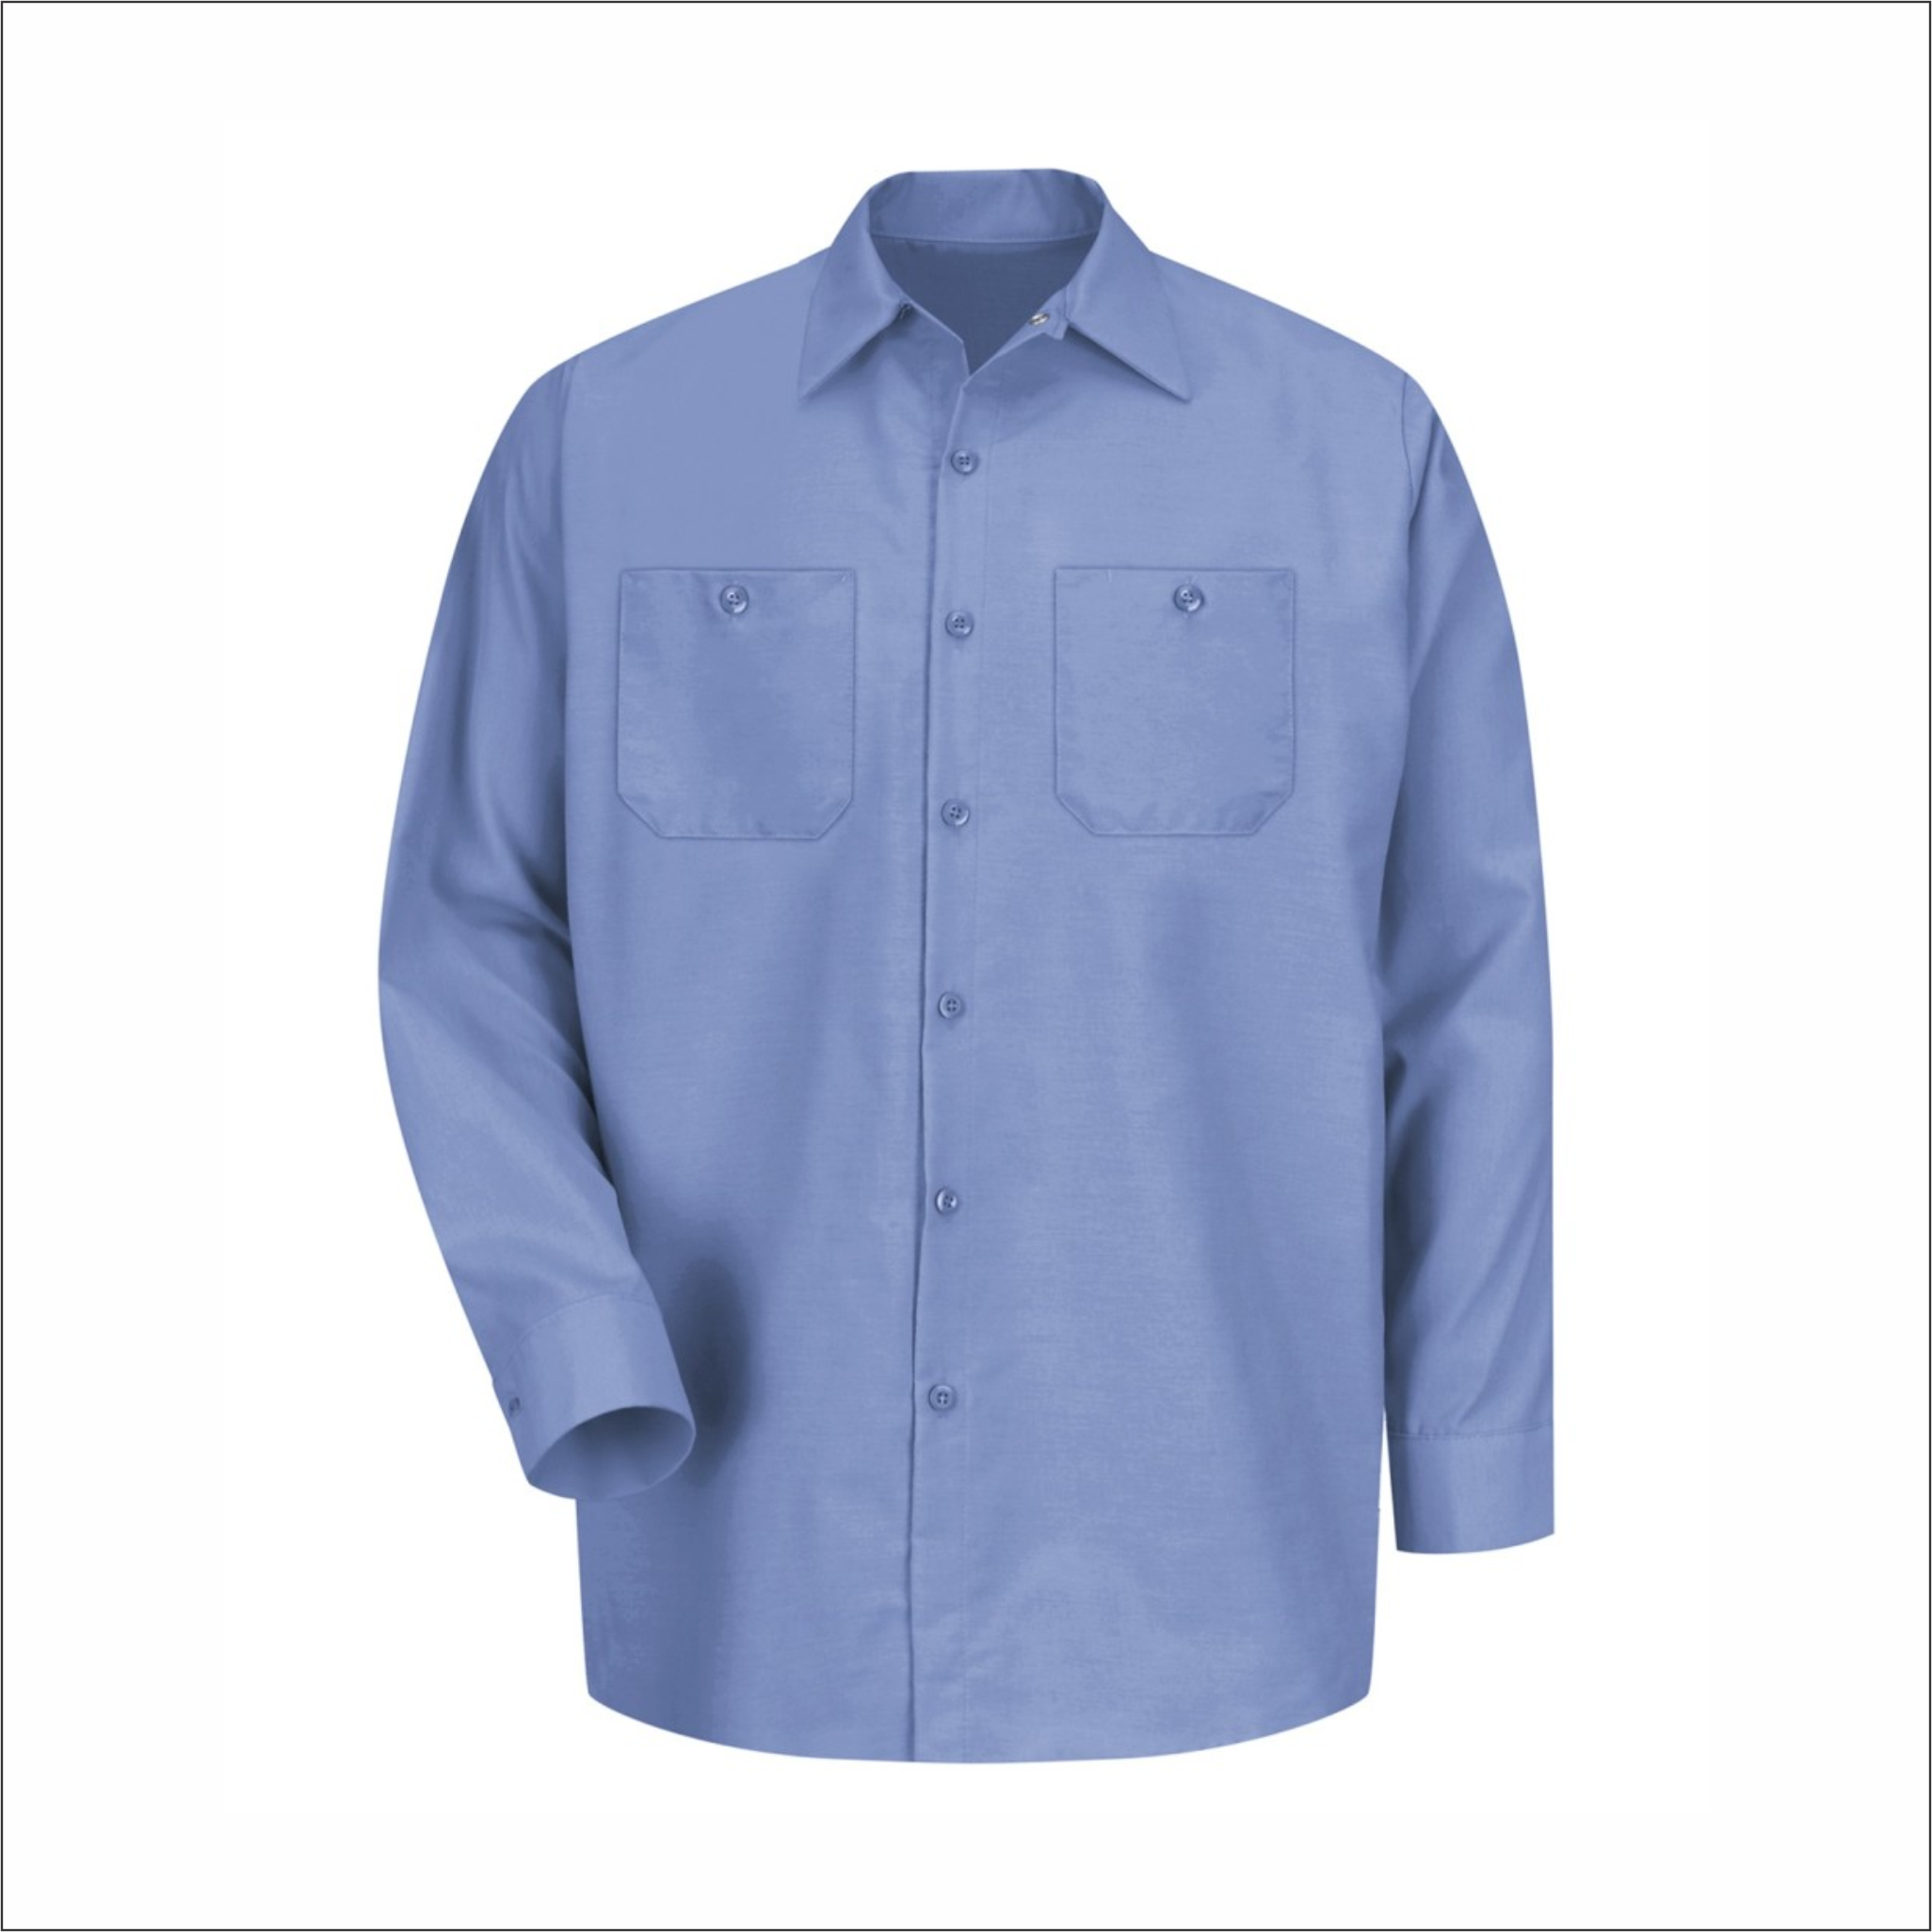 Adult Dress Light Blue Shirt - Long Sleeve - SP14